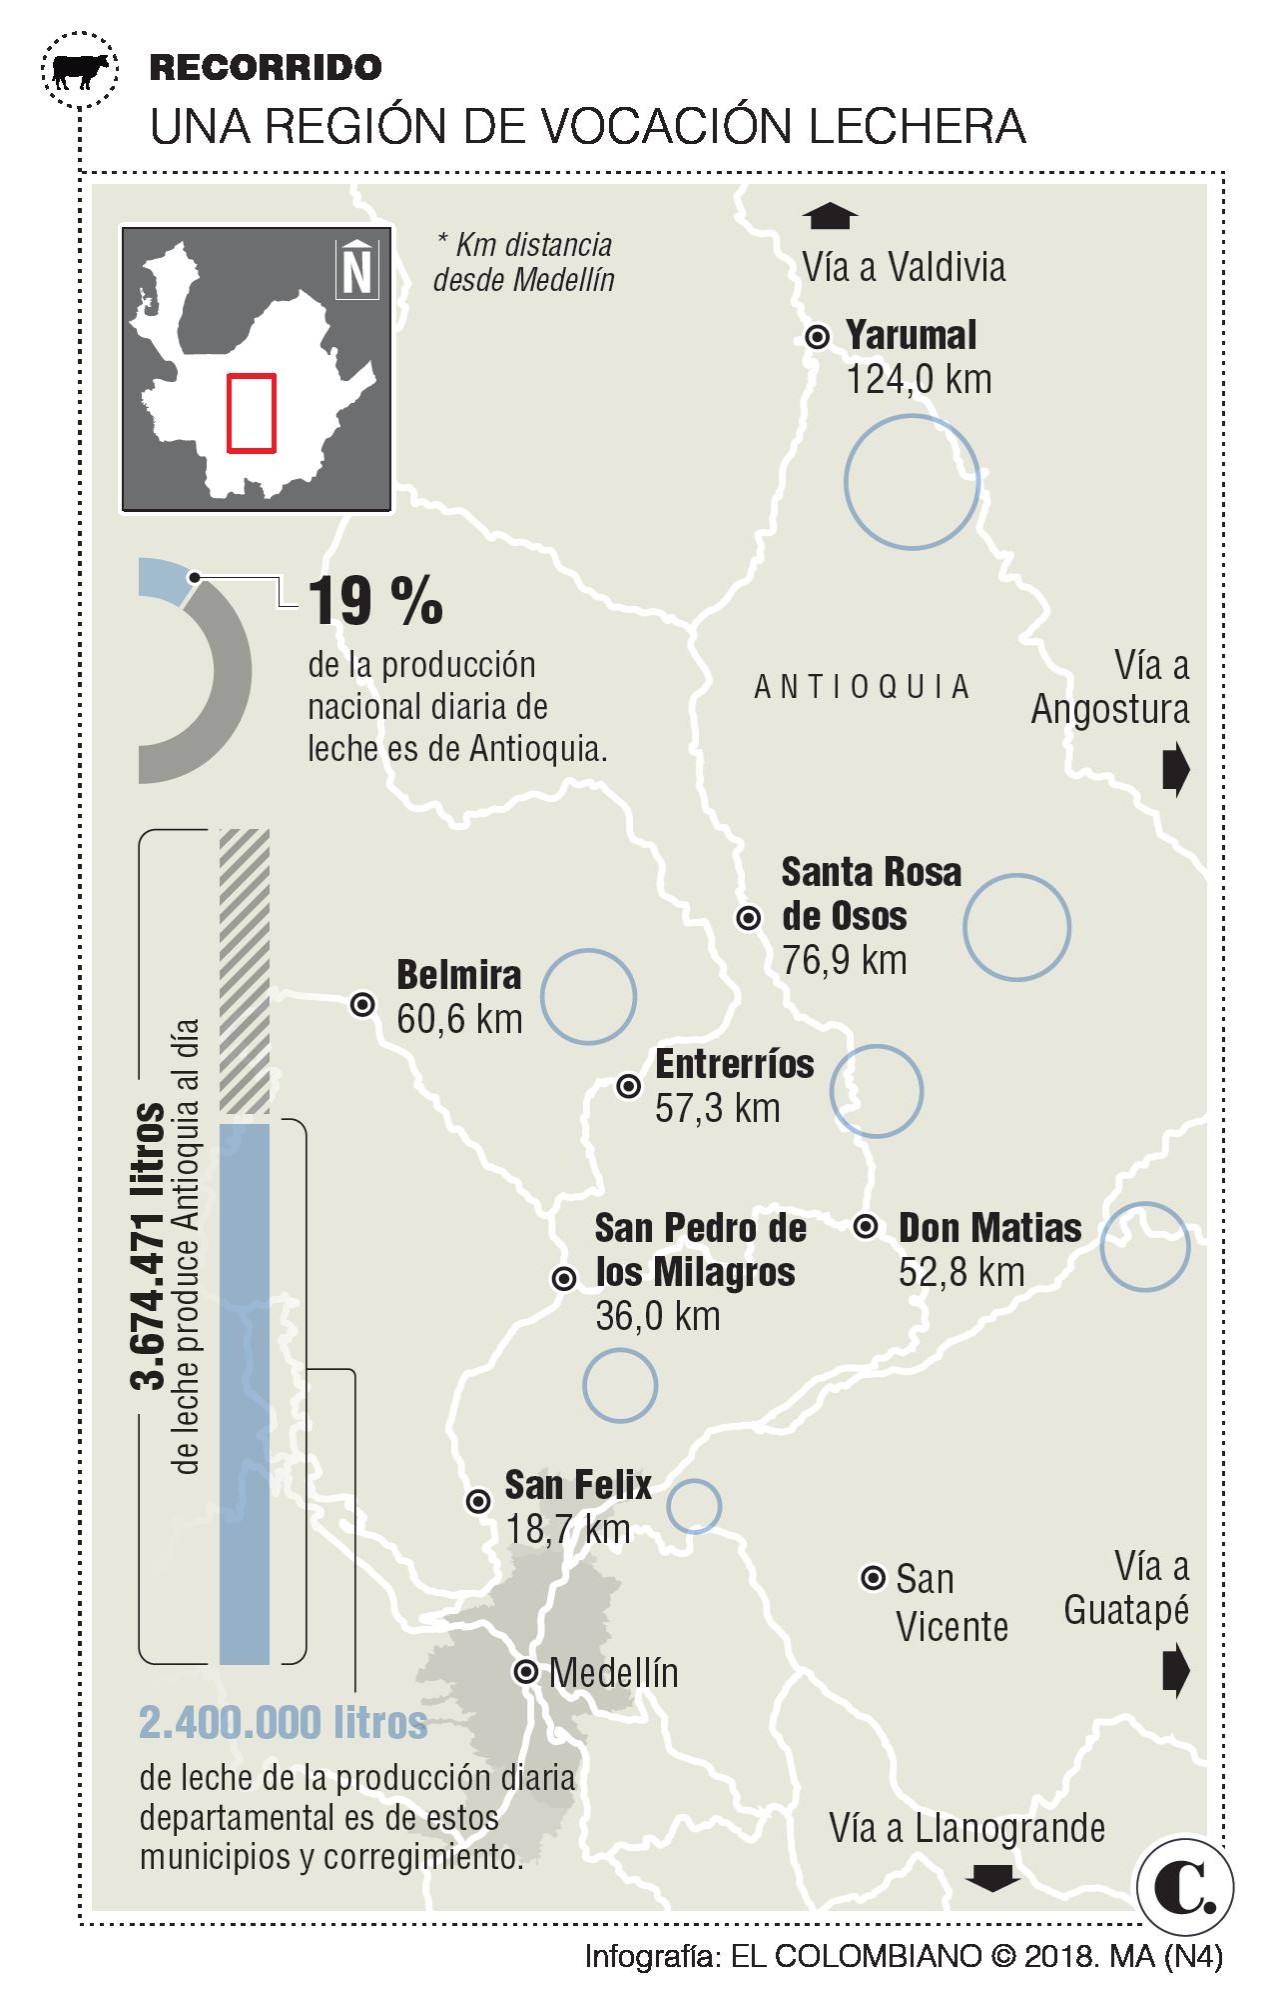 Turismo y producción lechera: así es la ruta de la vía láctea en Antioquia